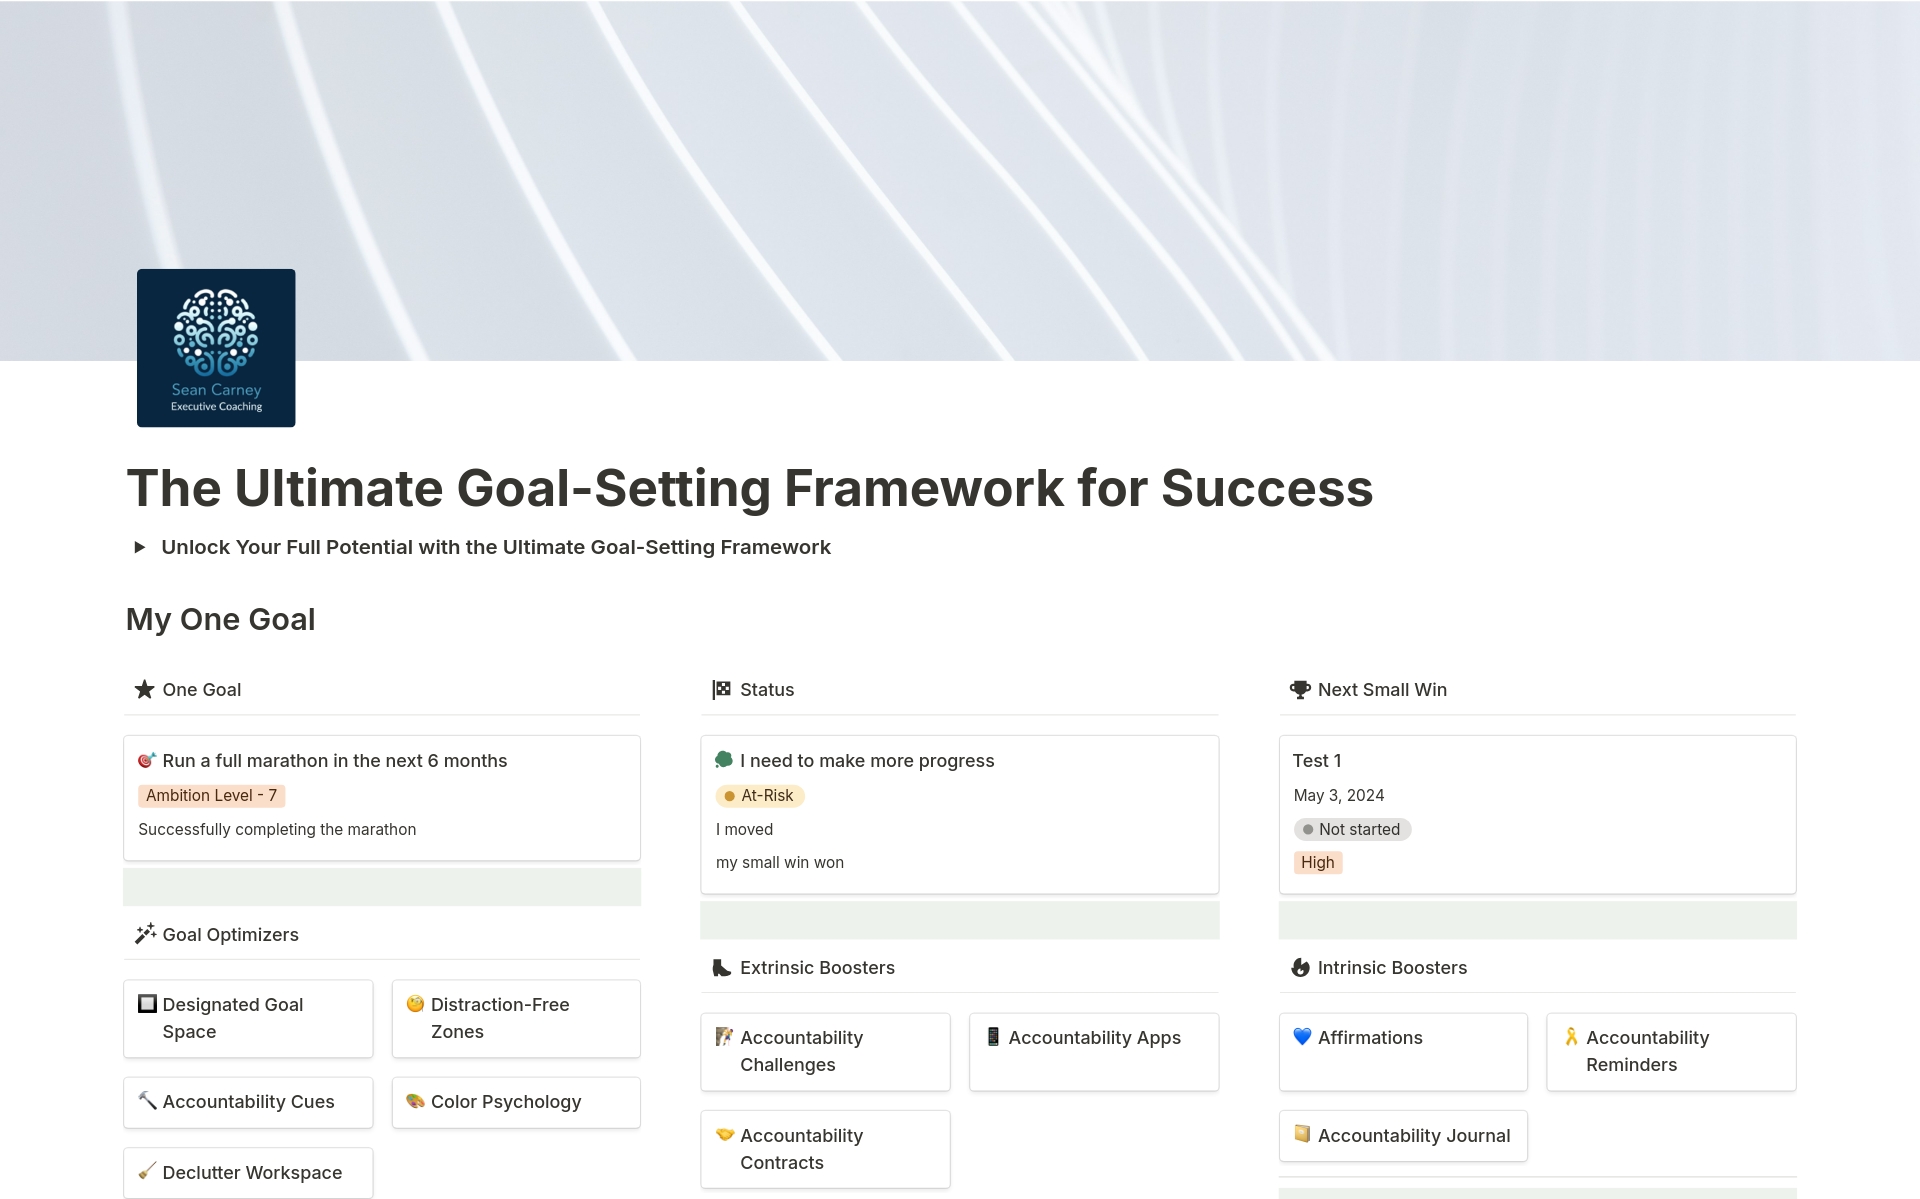 Uma prévia do modelo para The Ultimate Goal-Setting Framework for Success